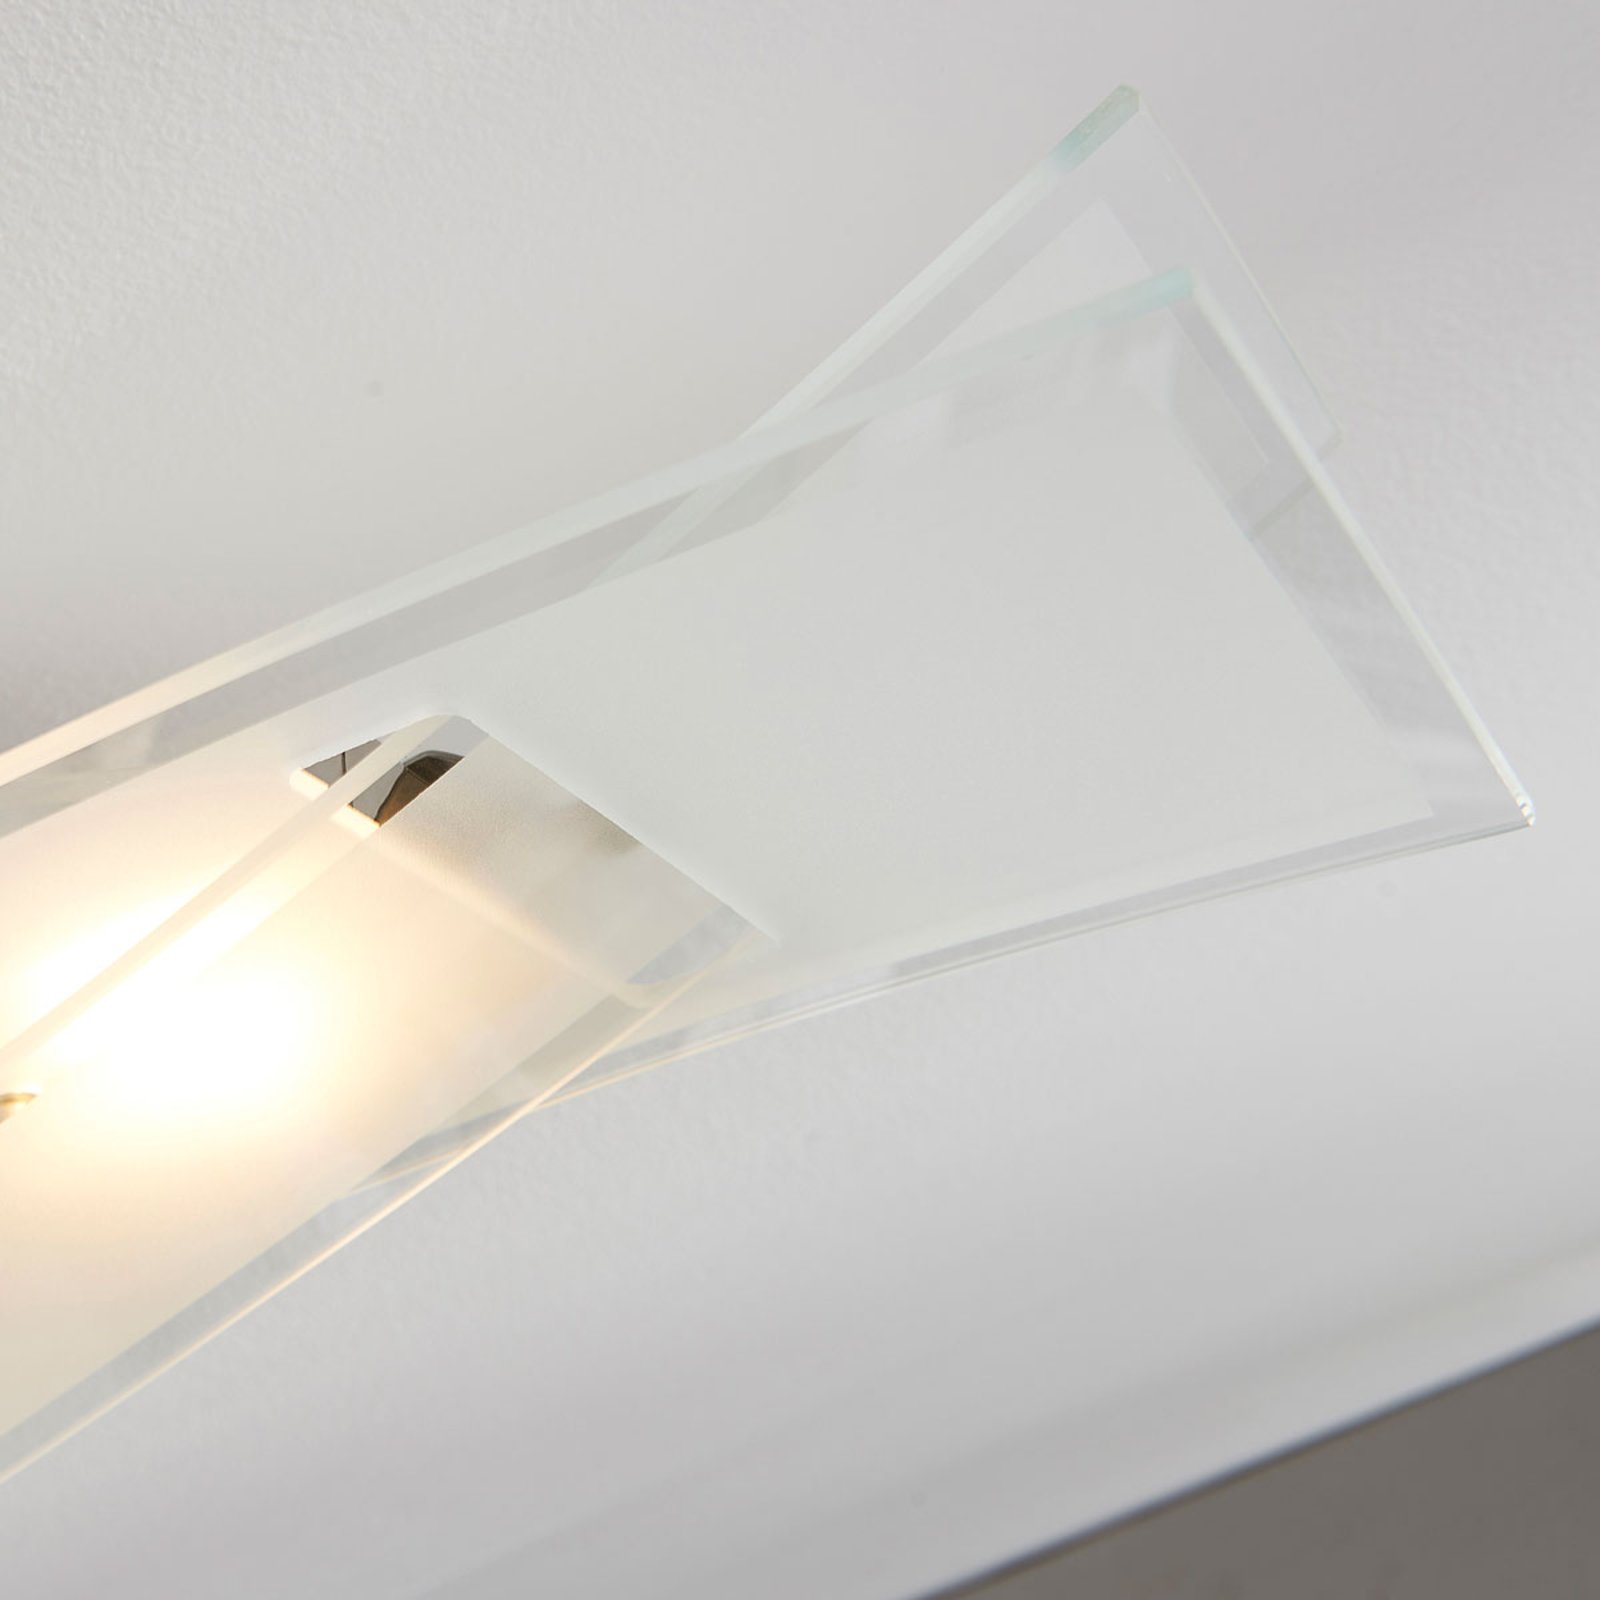 LED-plafondlamp Fiete van glas